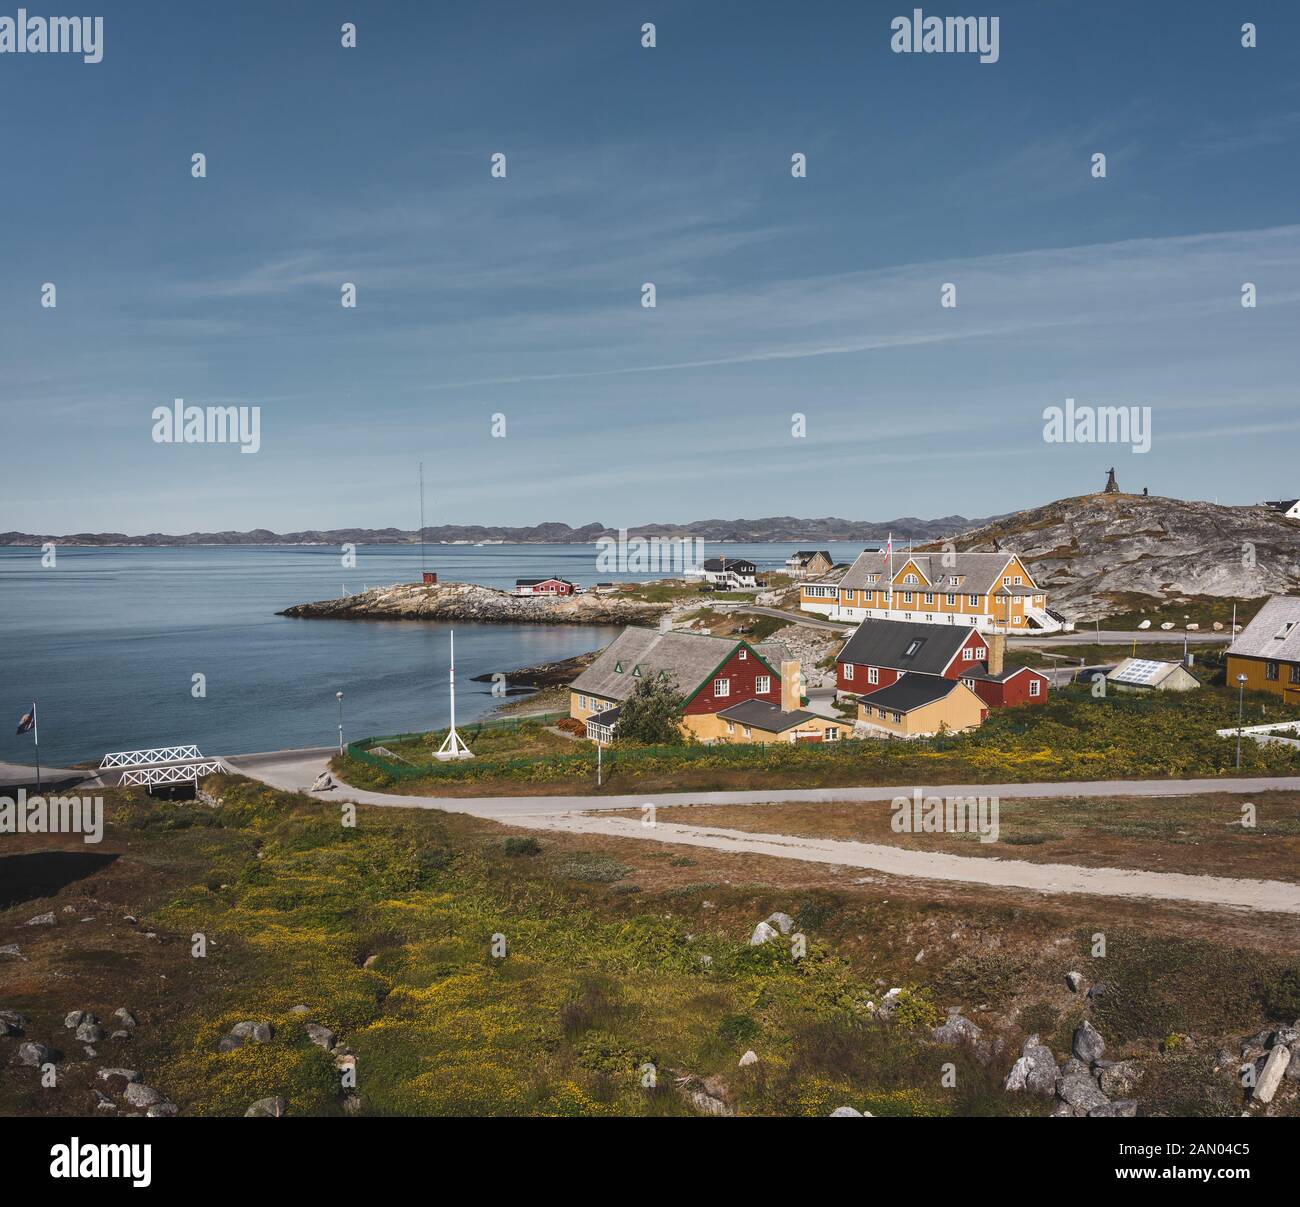 Nuuk ville de Hans Egede. Capitale du Groenland. Les couleurs des maisons dans une banlieue de la capitale de l'Arctique Nuuk. L'ancien hôpital - l'école à bord de l'eau Banque D'Images